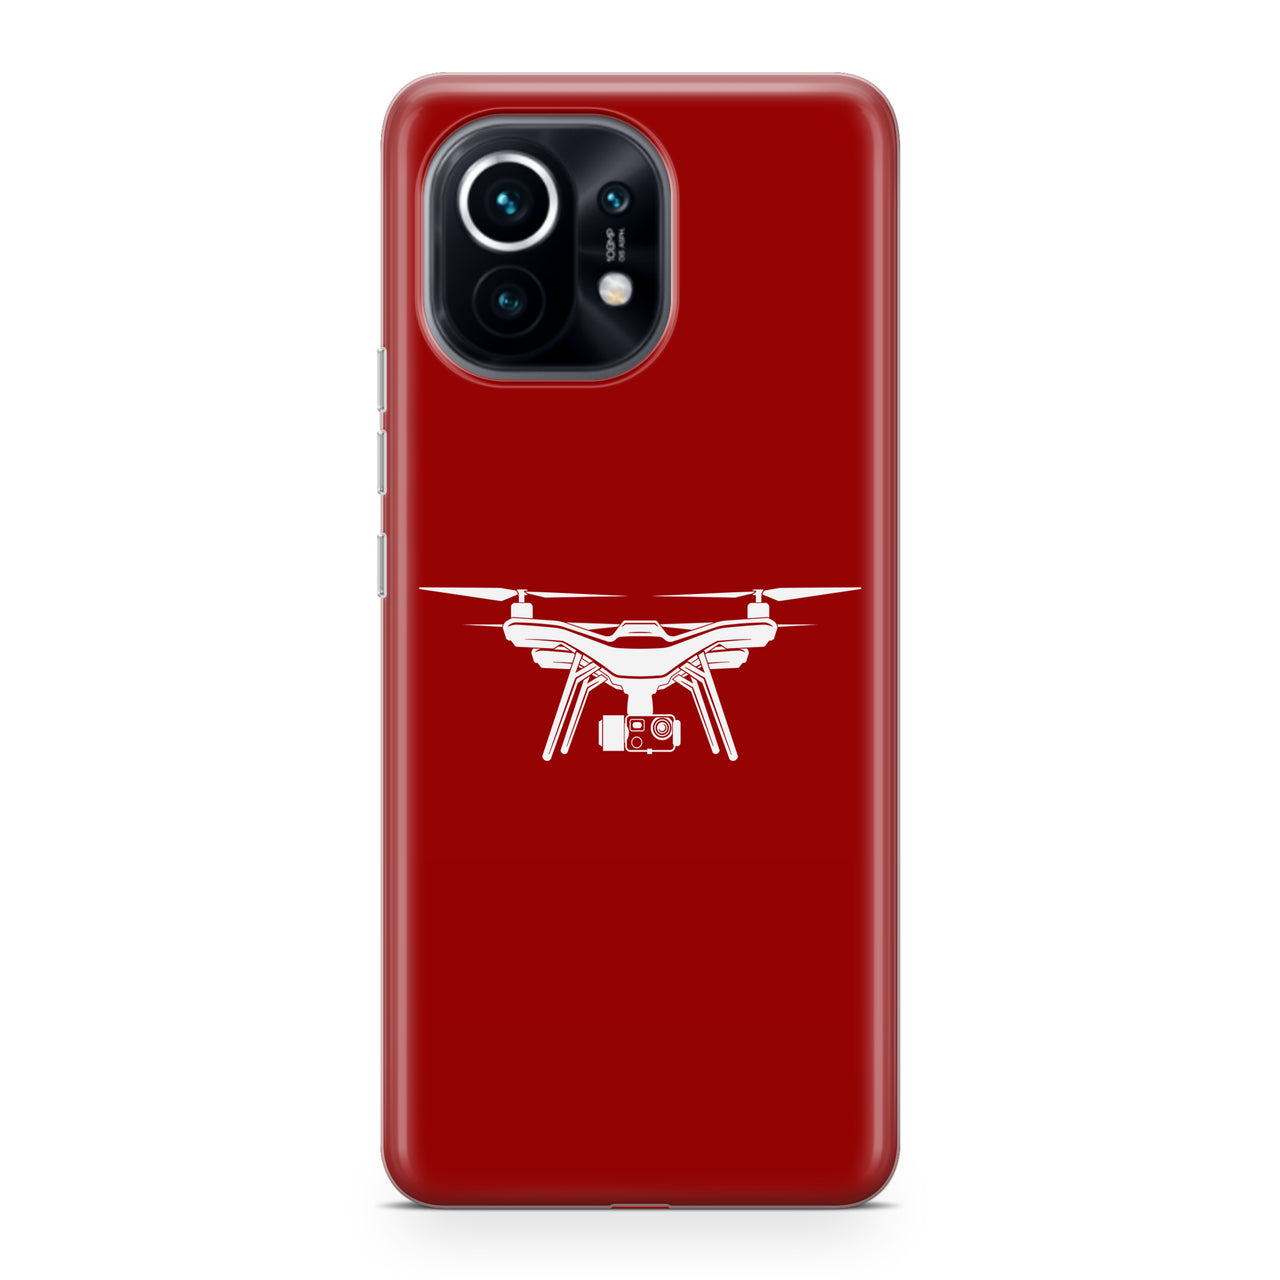 Drone Silhouette Designed Xiaomi Cases